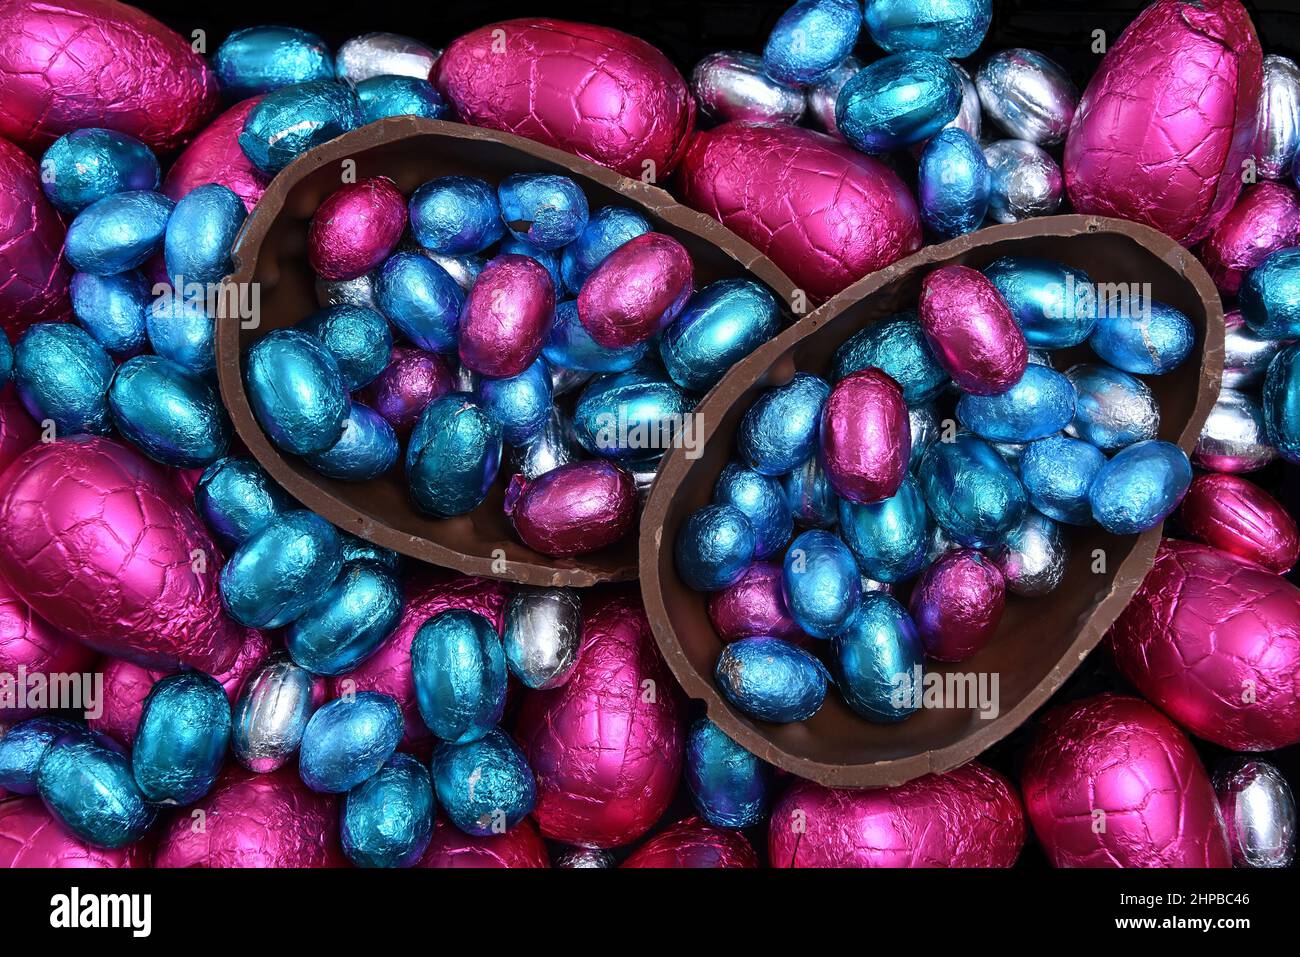 Stapel von verschiedenen Größen von bunten Folie umwickelt Schokolade ostereier in rosa, rot, silber und blau mit zwei Hälften eines großen Schokoladenei. Stockfoto